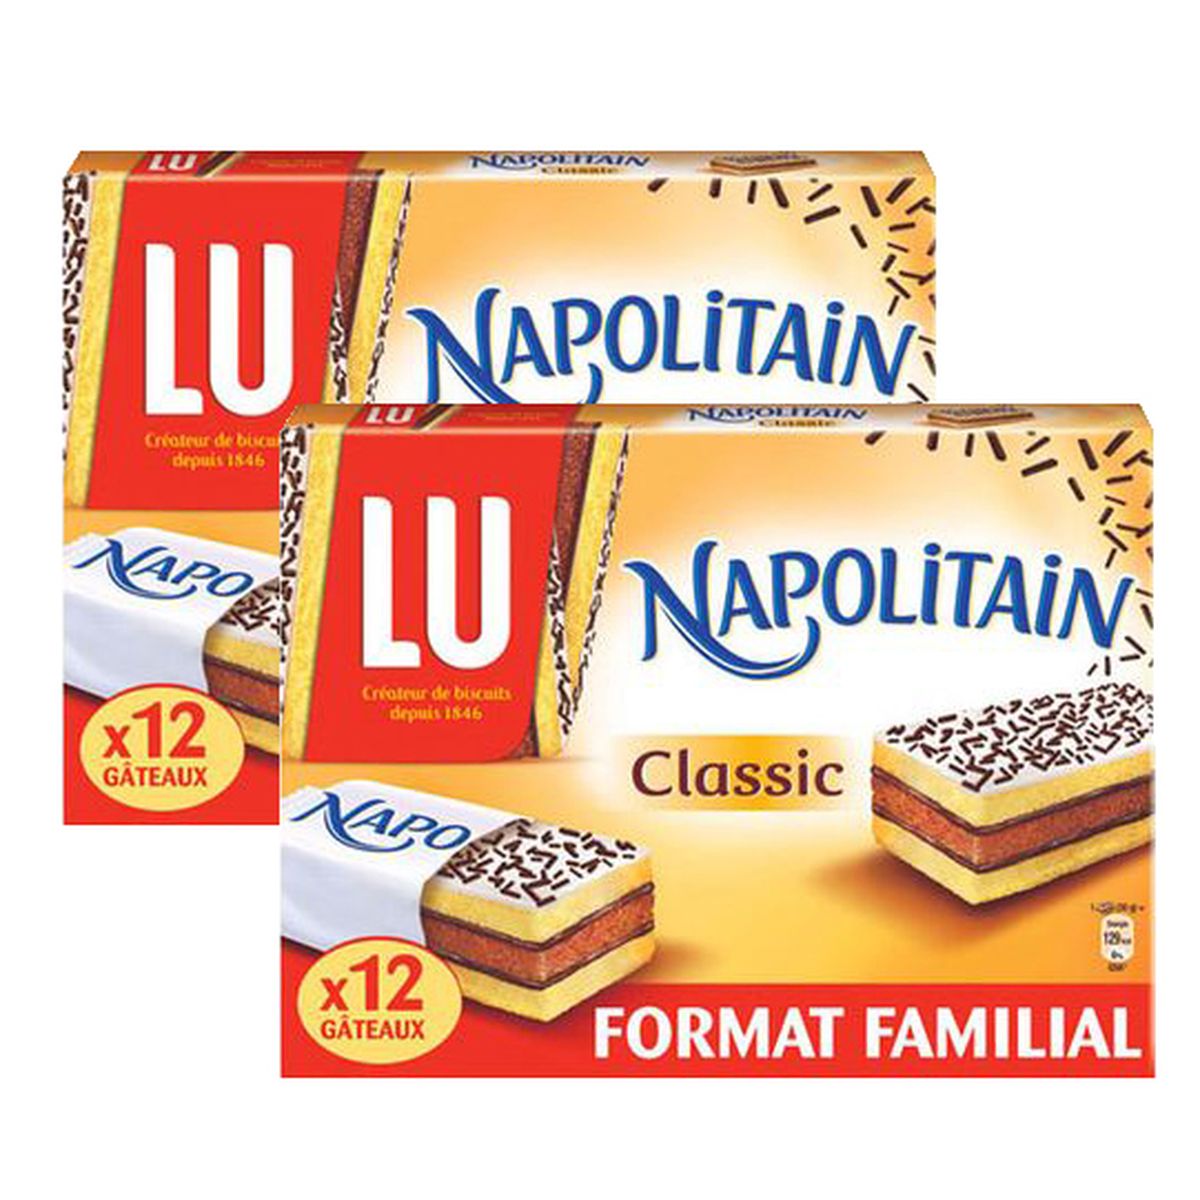 Achat Promotion Lu Napolitain Mini classic, 2x12 pièces, Lot de 2x360g